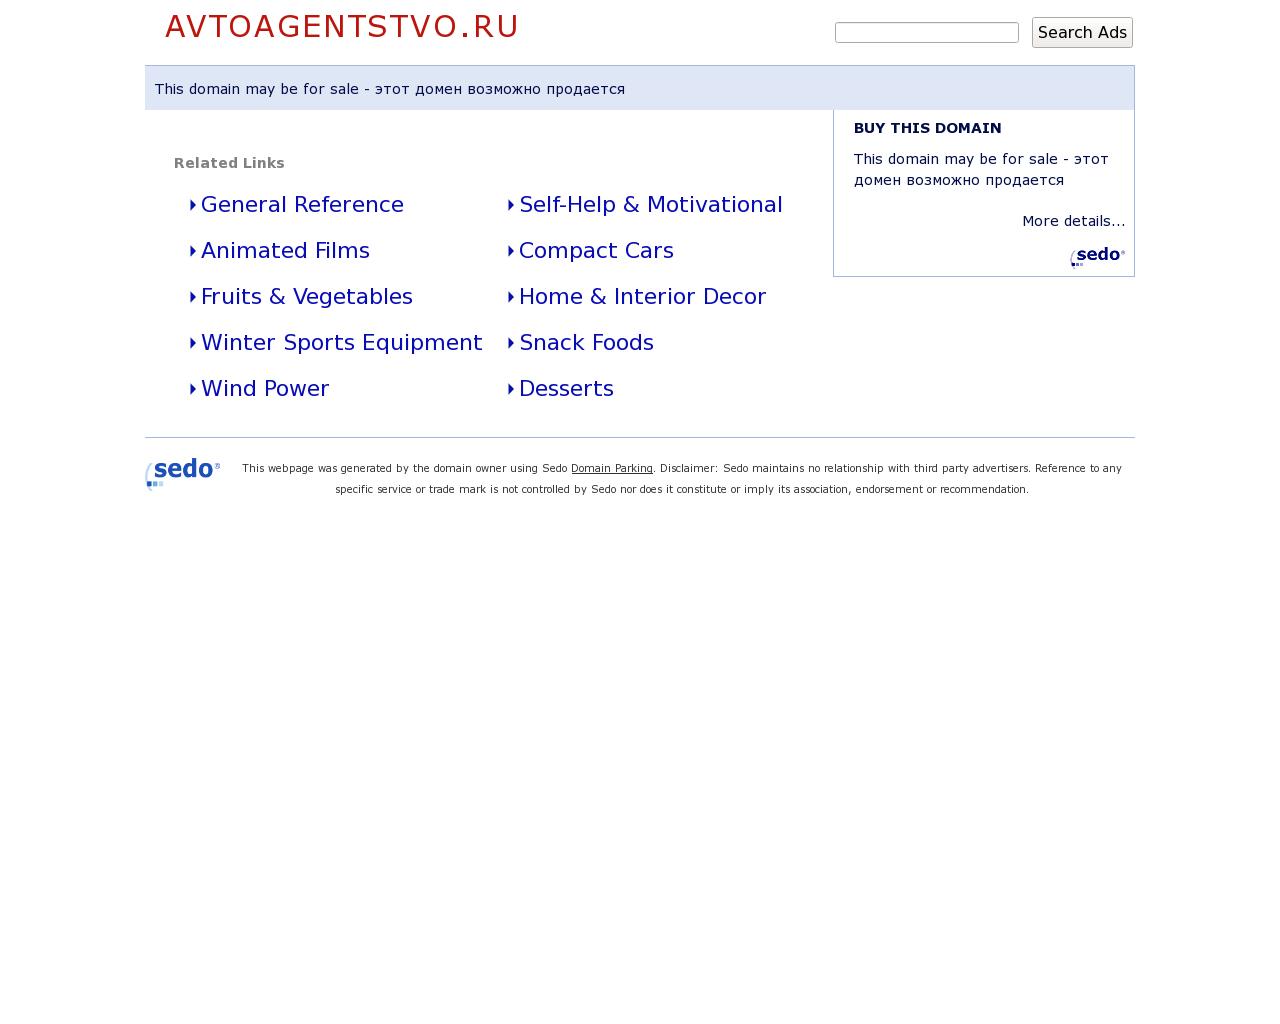 Изображение сайта avtoagentstvo.ru в разрешении 1280x1024